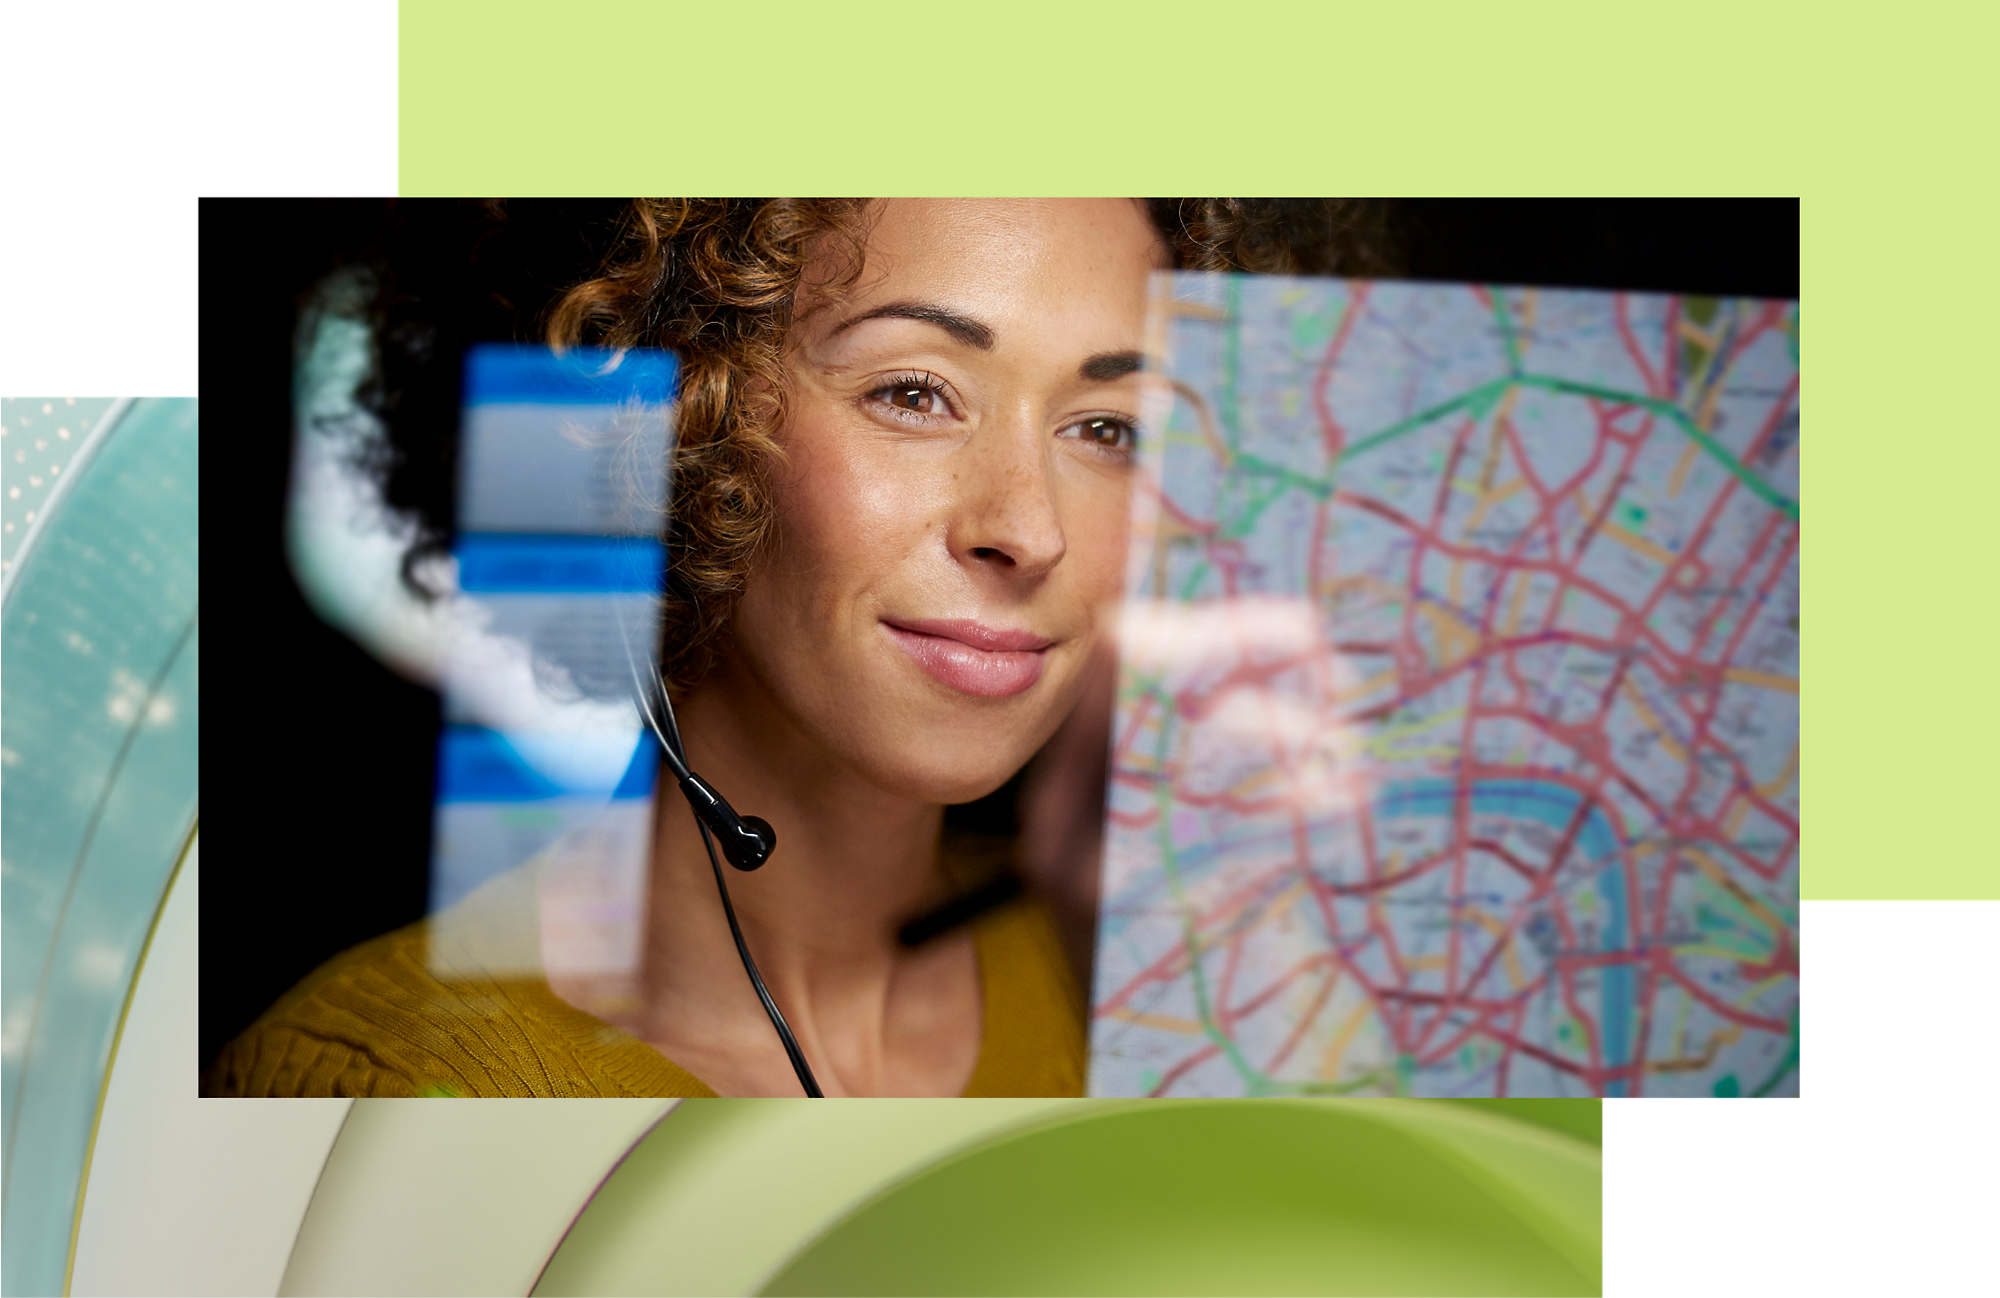 Przedstawiciel klienta z założonym zestawem słuchawkowym, który uśmiecha się podczas patrzenia na mapę wyświetlaną na ekranie cyfrowym